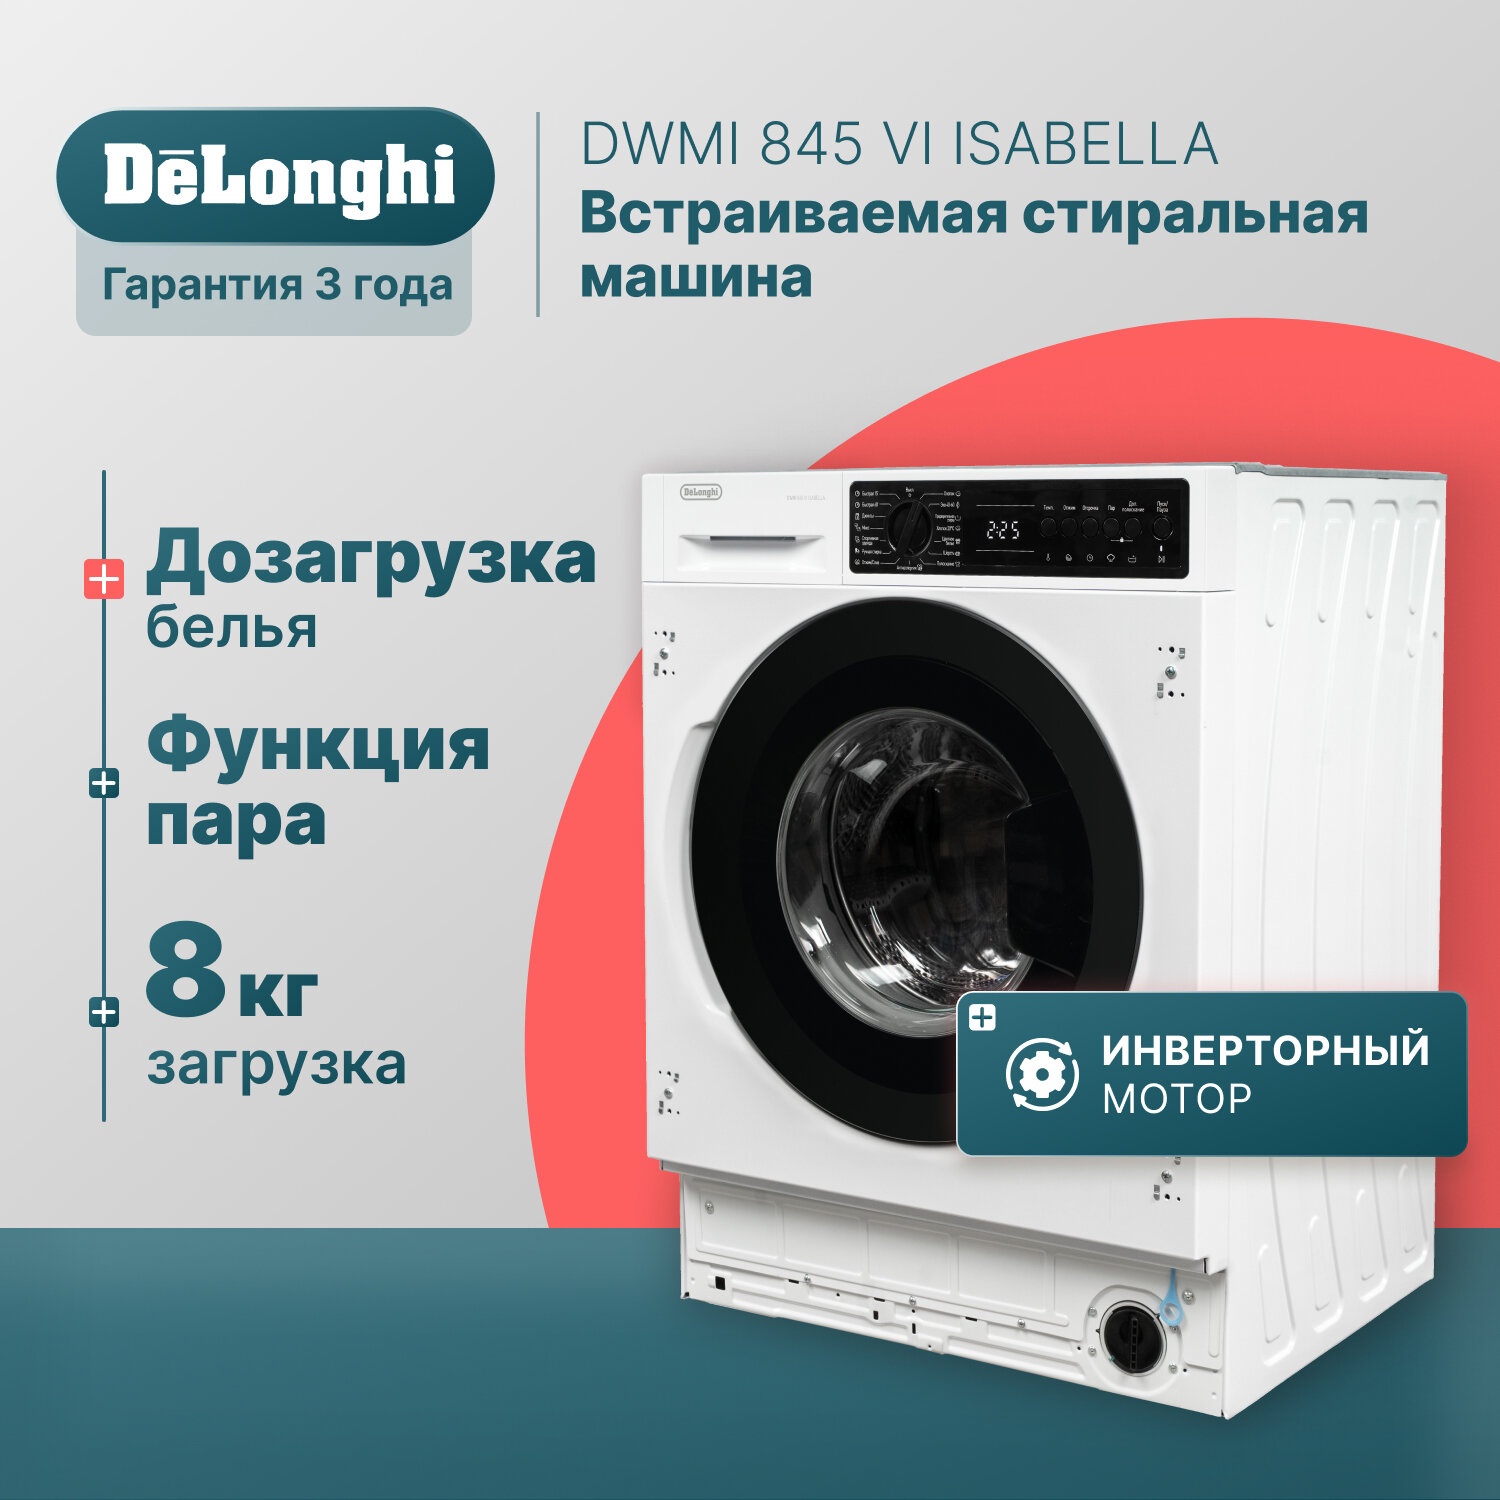 Встраиваемая стиральная машина автомат 54 см DeLonghi DWMI 845 VI ISABELLA, 8 кг, инверторный мотор, легкое глаженье, стиральная машинка с выбором скорости отжима и температуры стирки, машинка стиральная автомат